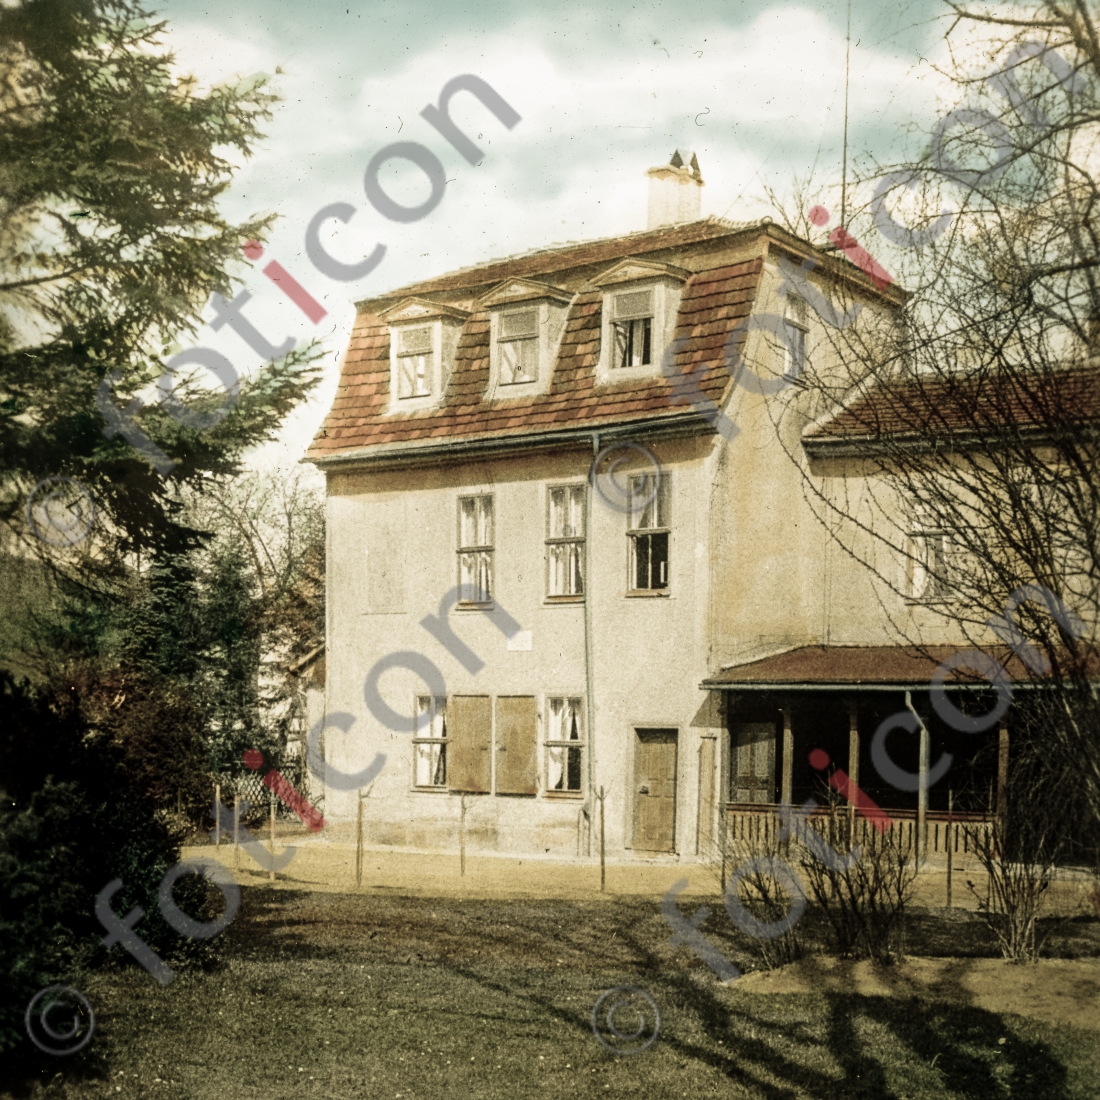 Schillers Gartenhaus | Schiller&#039;s garden house - Foto simon-156-044.jpg | foticon.de - Bilddatenbank für Motive aus Geschichte und Kultur